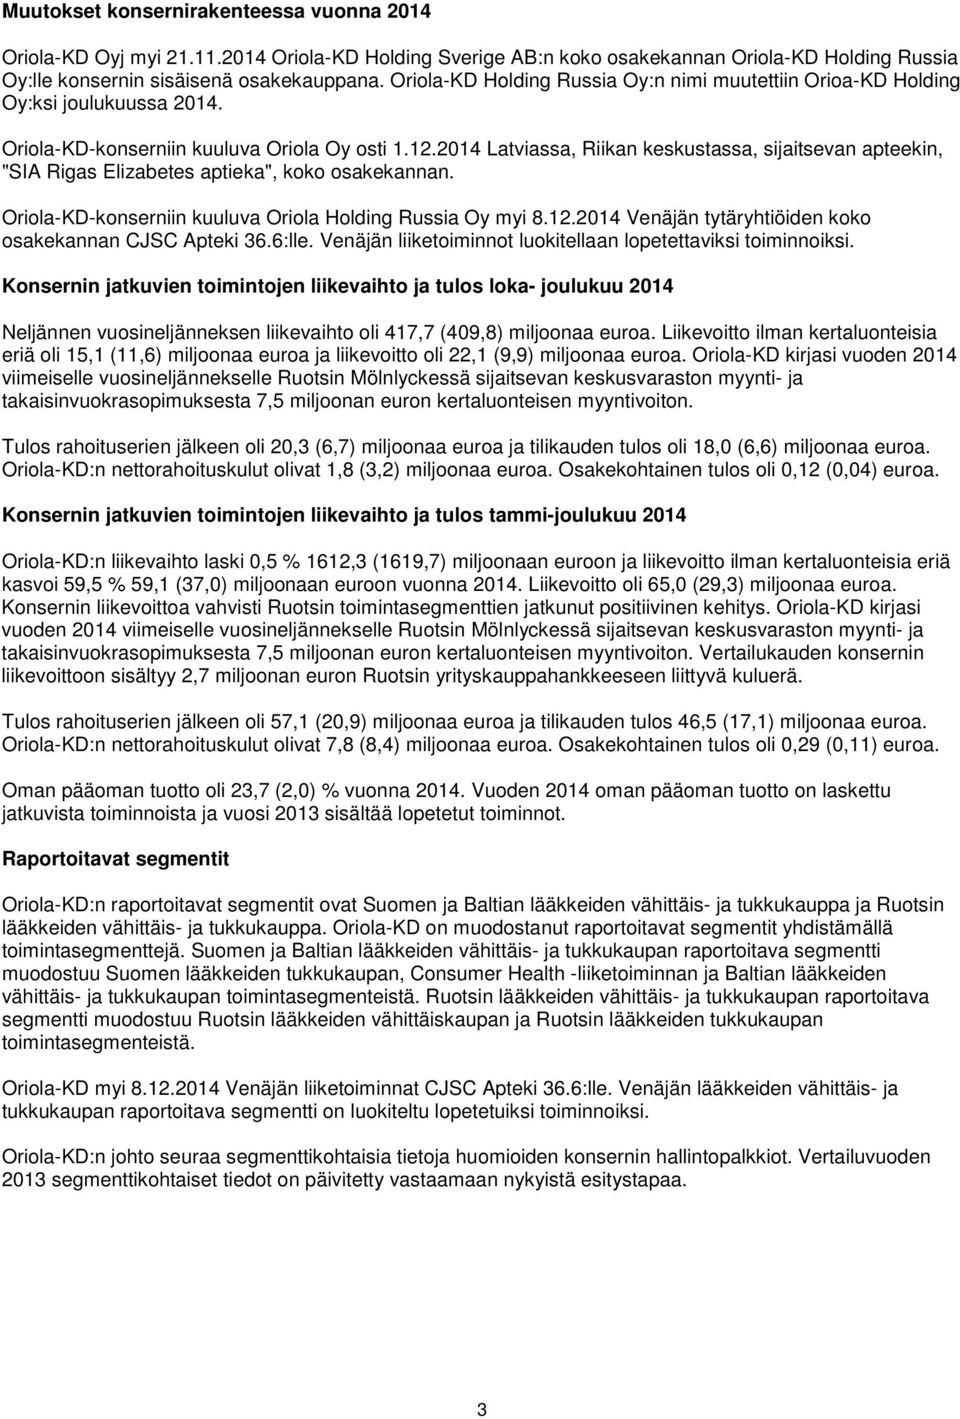 2014 Latviassa, Riikan keskustassa, sijaitsevan apteekin, "SIA Rigas Elizabetes aptieka", koko osakekannan. Oriola-KD-konserniin kuuluva Oriola Holding Russia Oy myi 8.12.